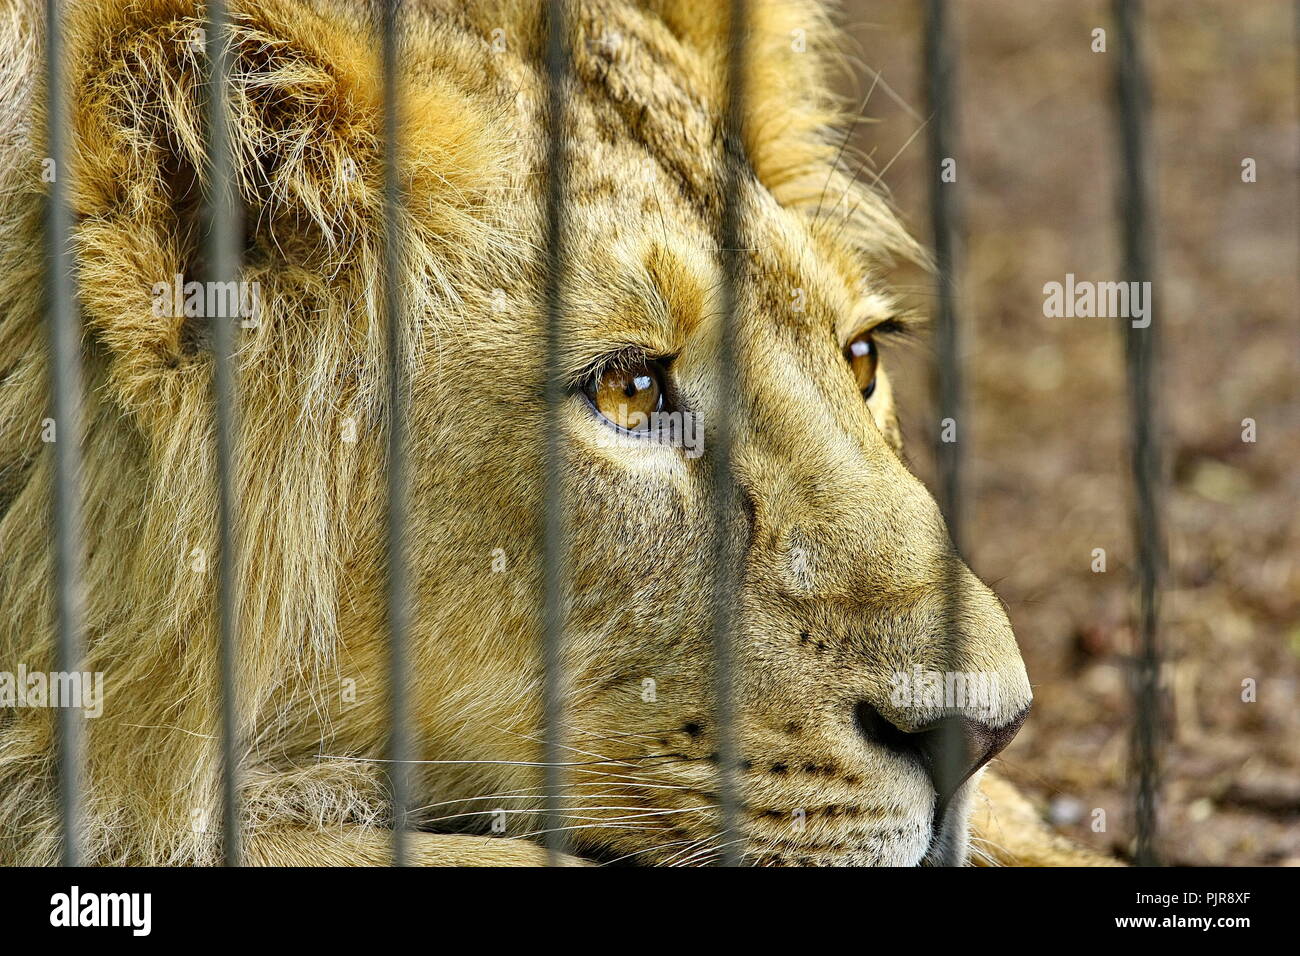 Leone in gabbia Zoo sogni di libertà Foto Stock